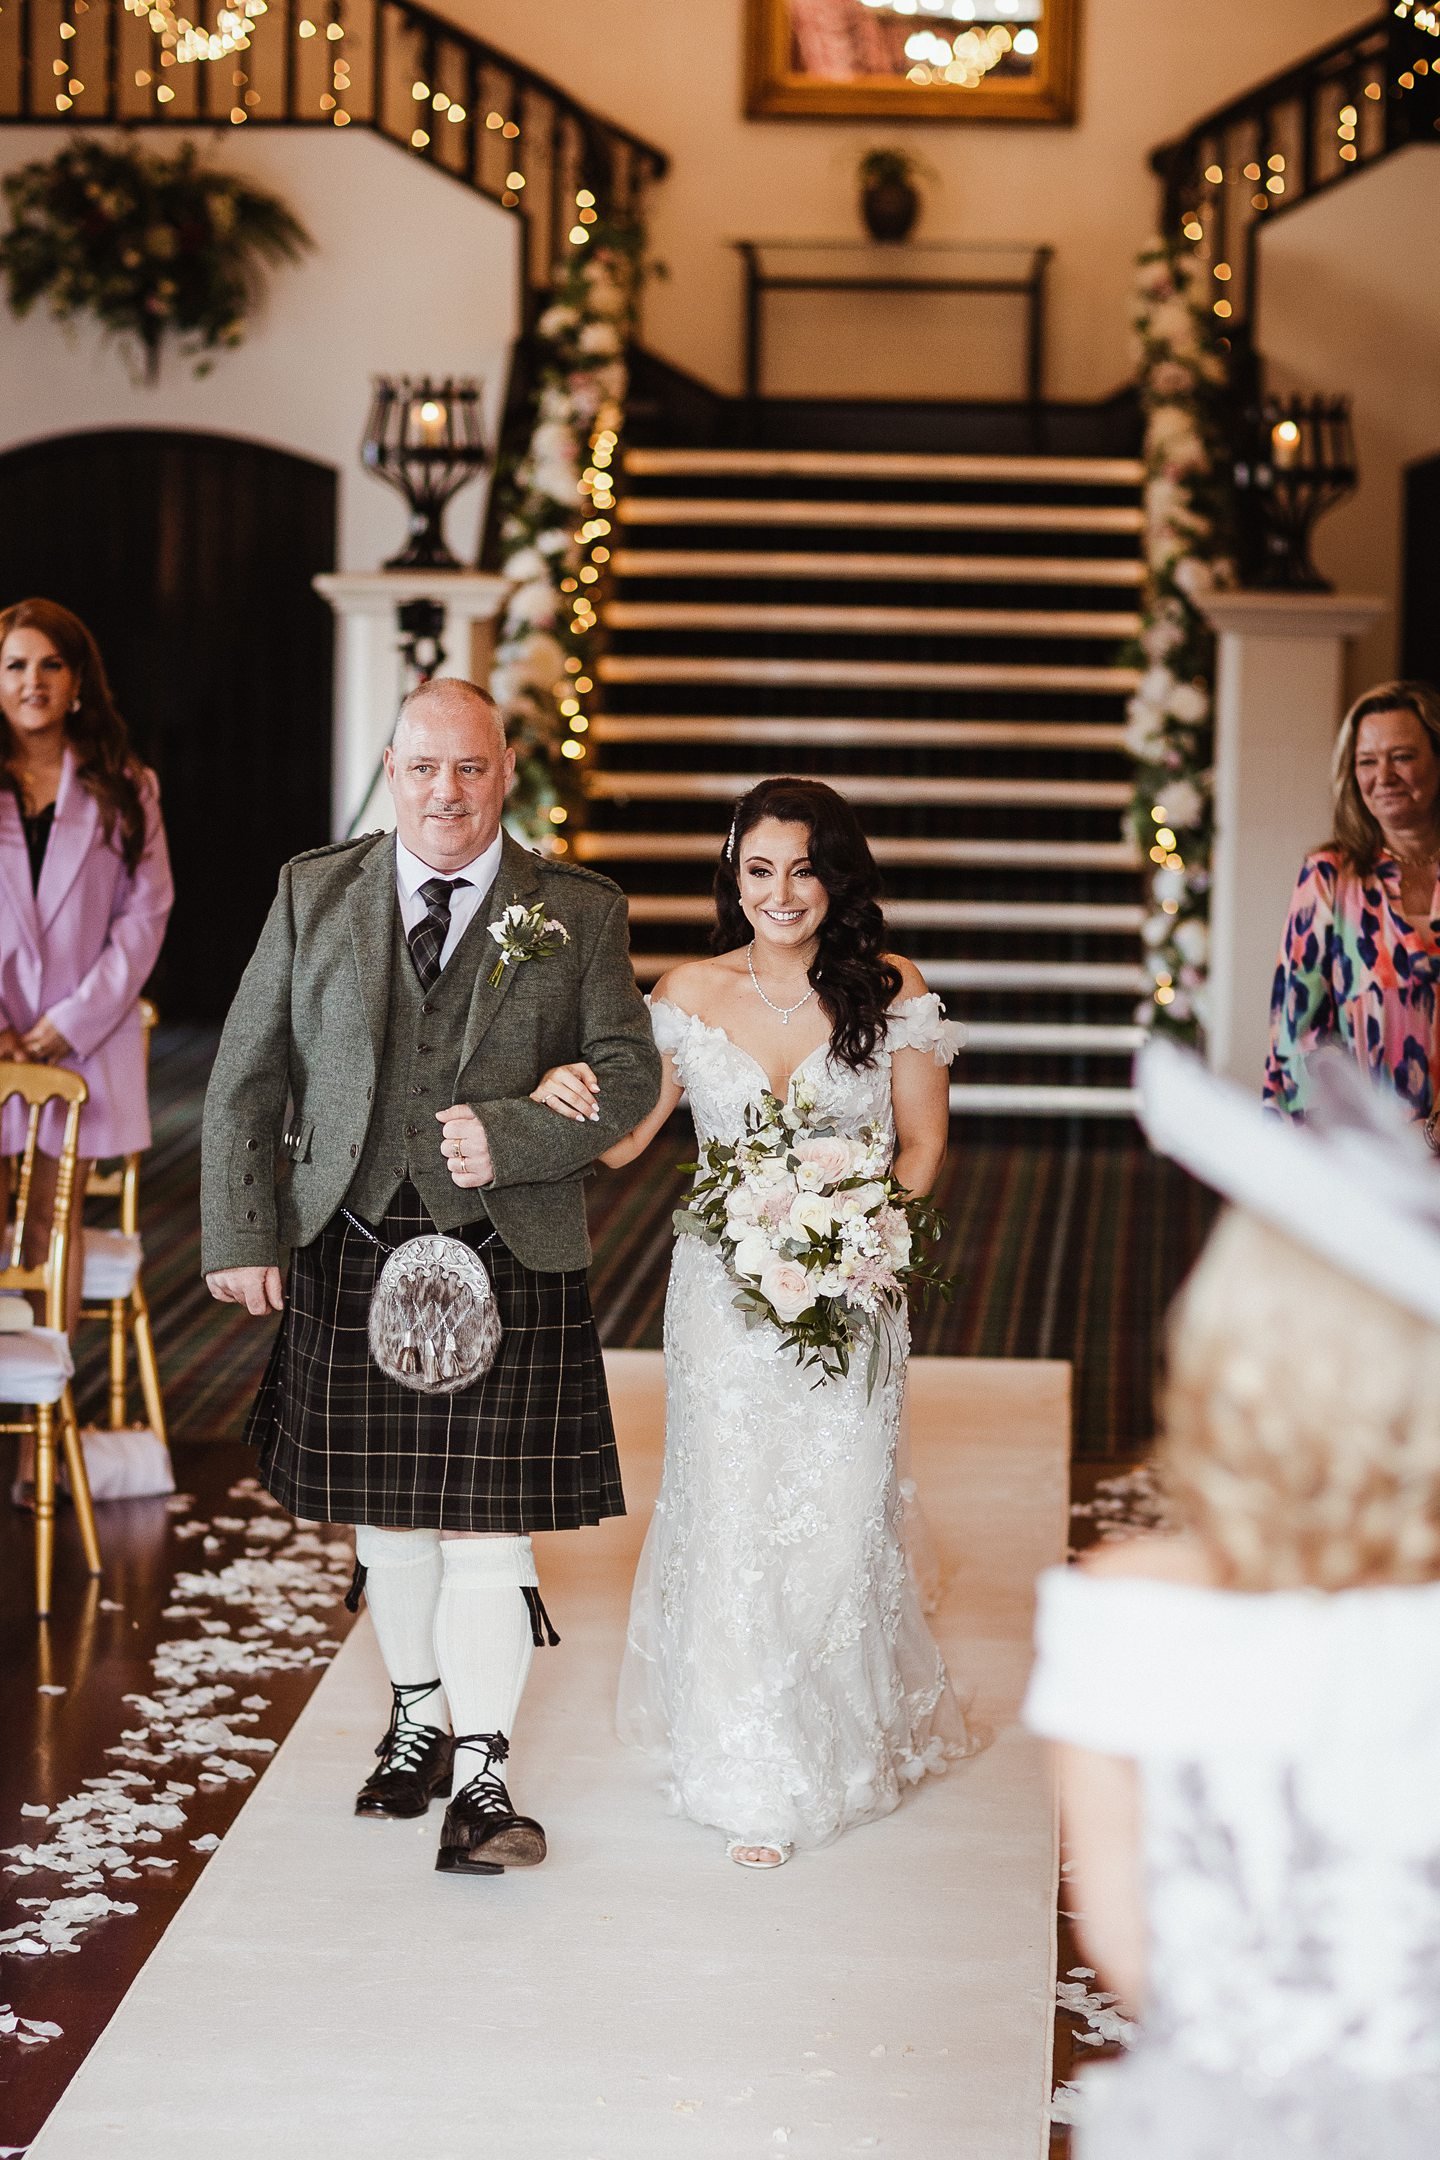 A Spring Wedding At Brig o'Doon House Hotel In Ayrshire Scotland 035.jpg